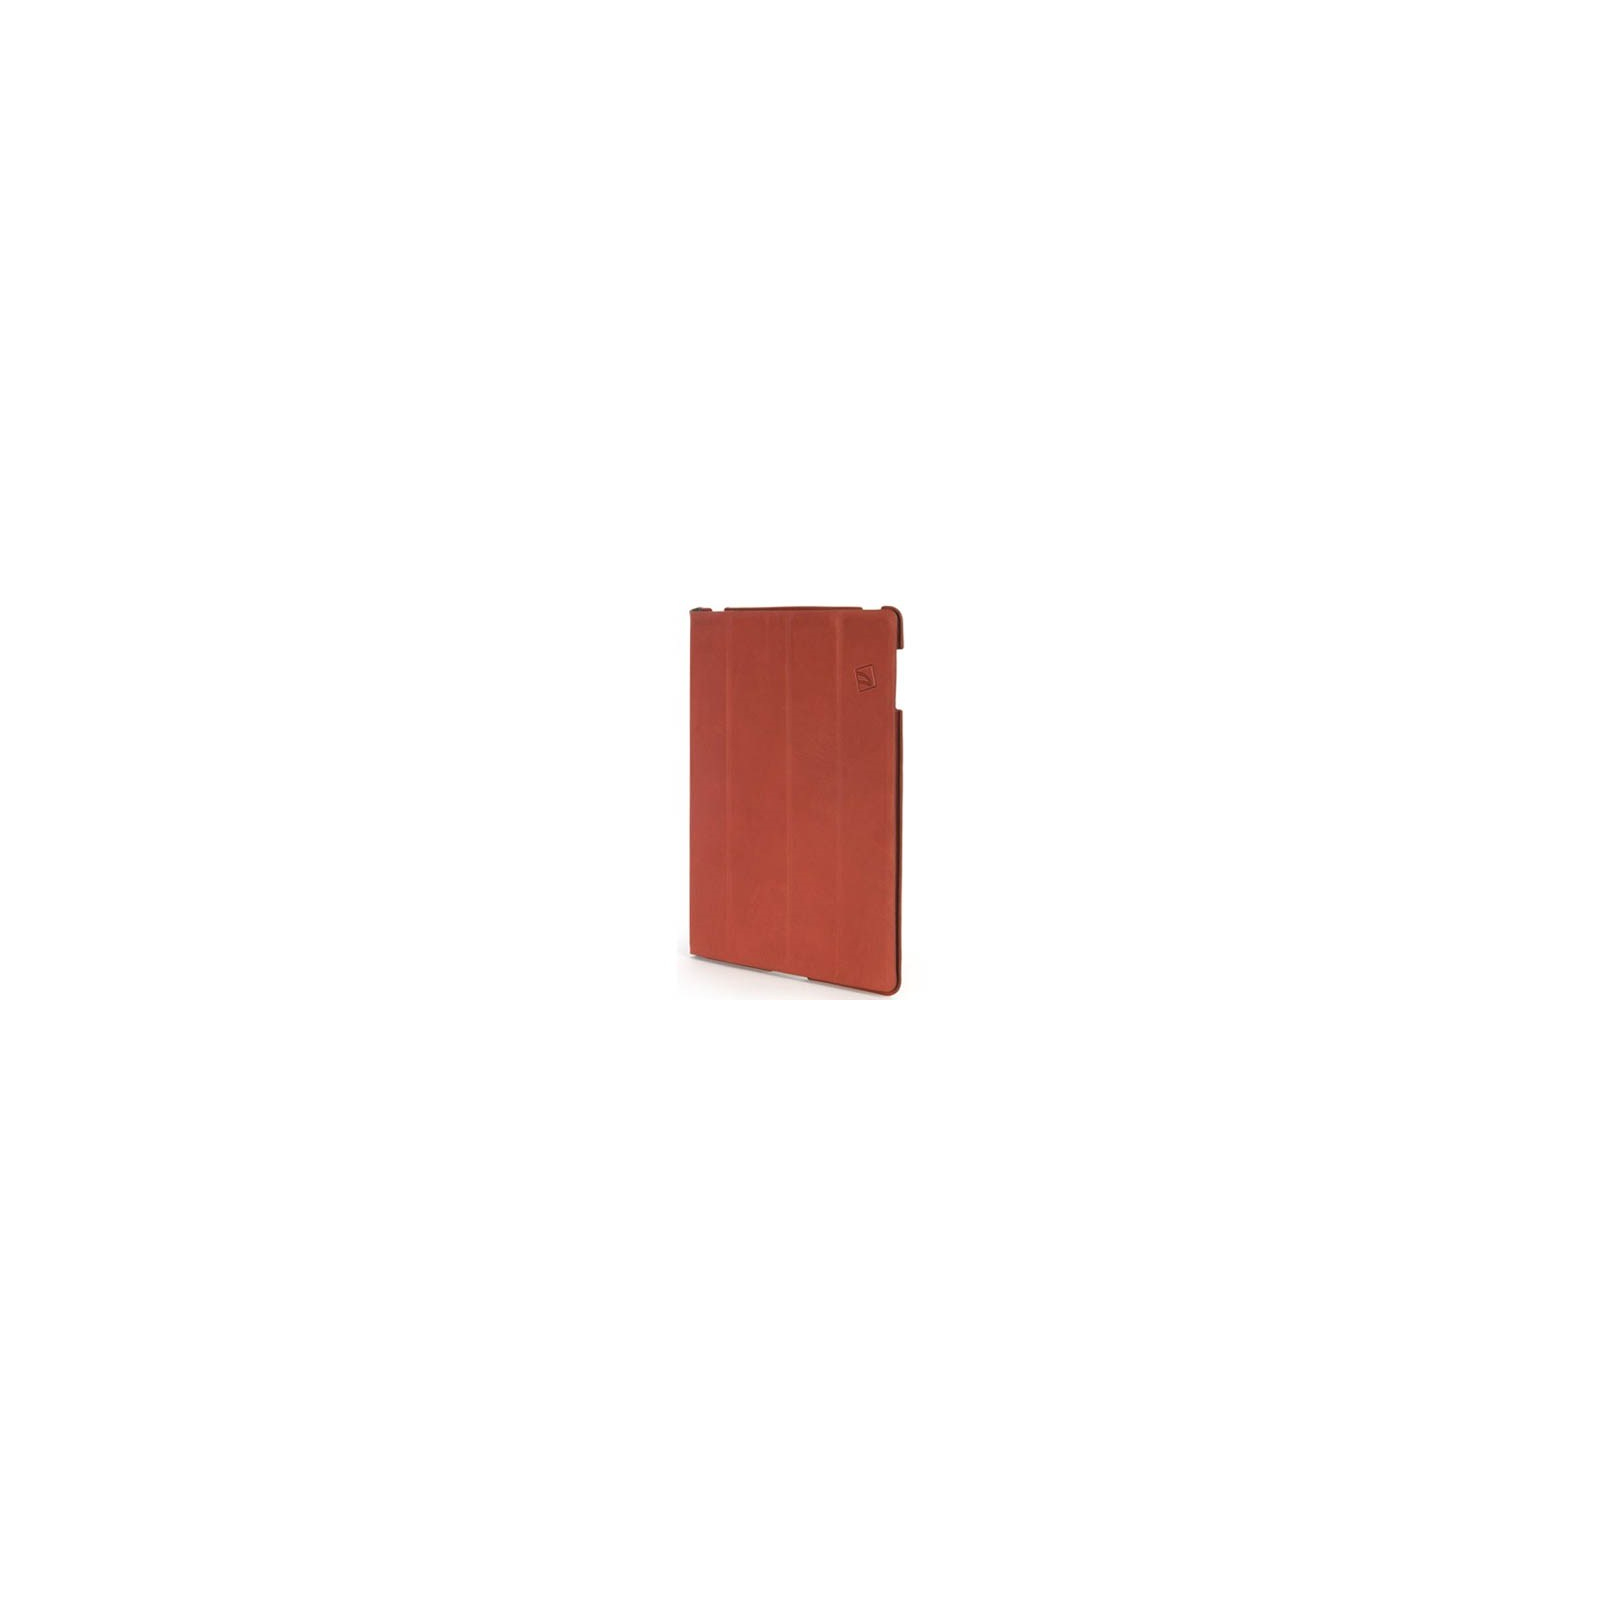 Чехол для планшета Tucano сумки iPad2/3/4 Cornice Eco leather (Red) (IPDCO23-R)